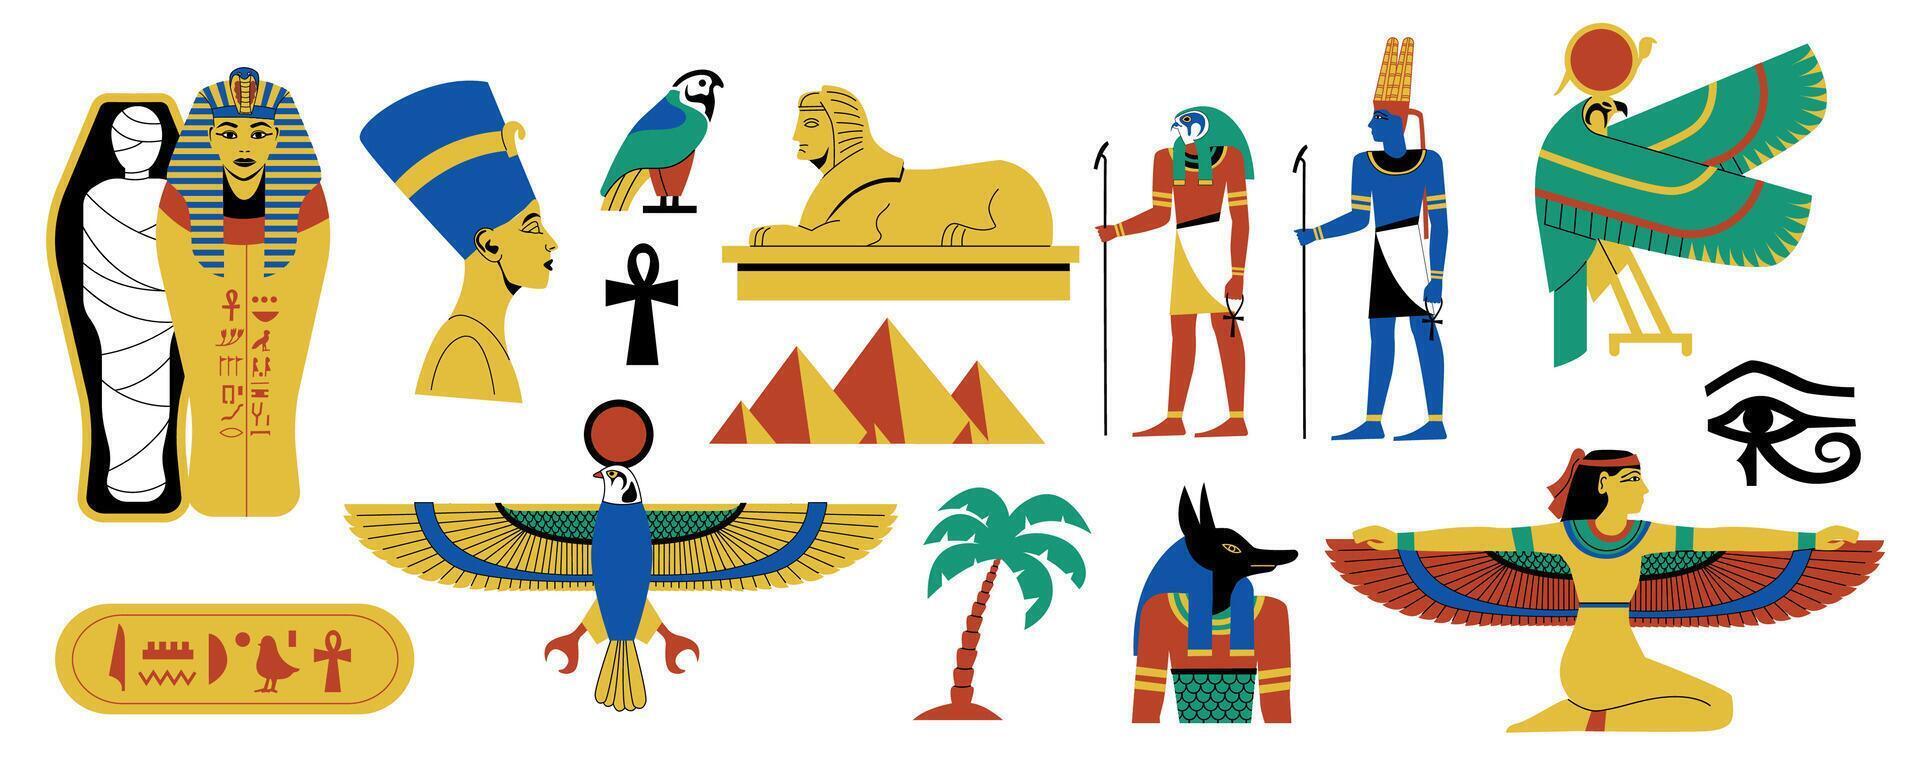 ägyptisch Symbole Satz. uralt ägyptisch Hieroglyphen, Papyrus und Papier dekorativ Elemente, uralt Mythologie und Kultur. Vektor Sammlung